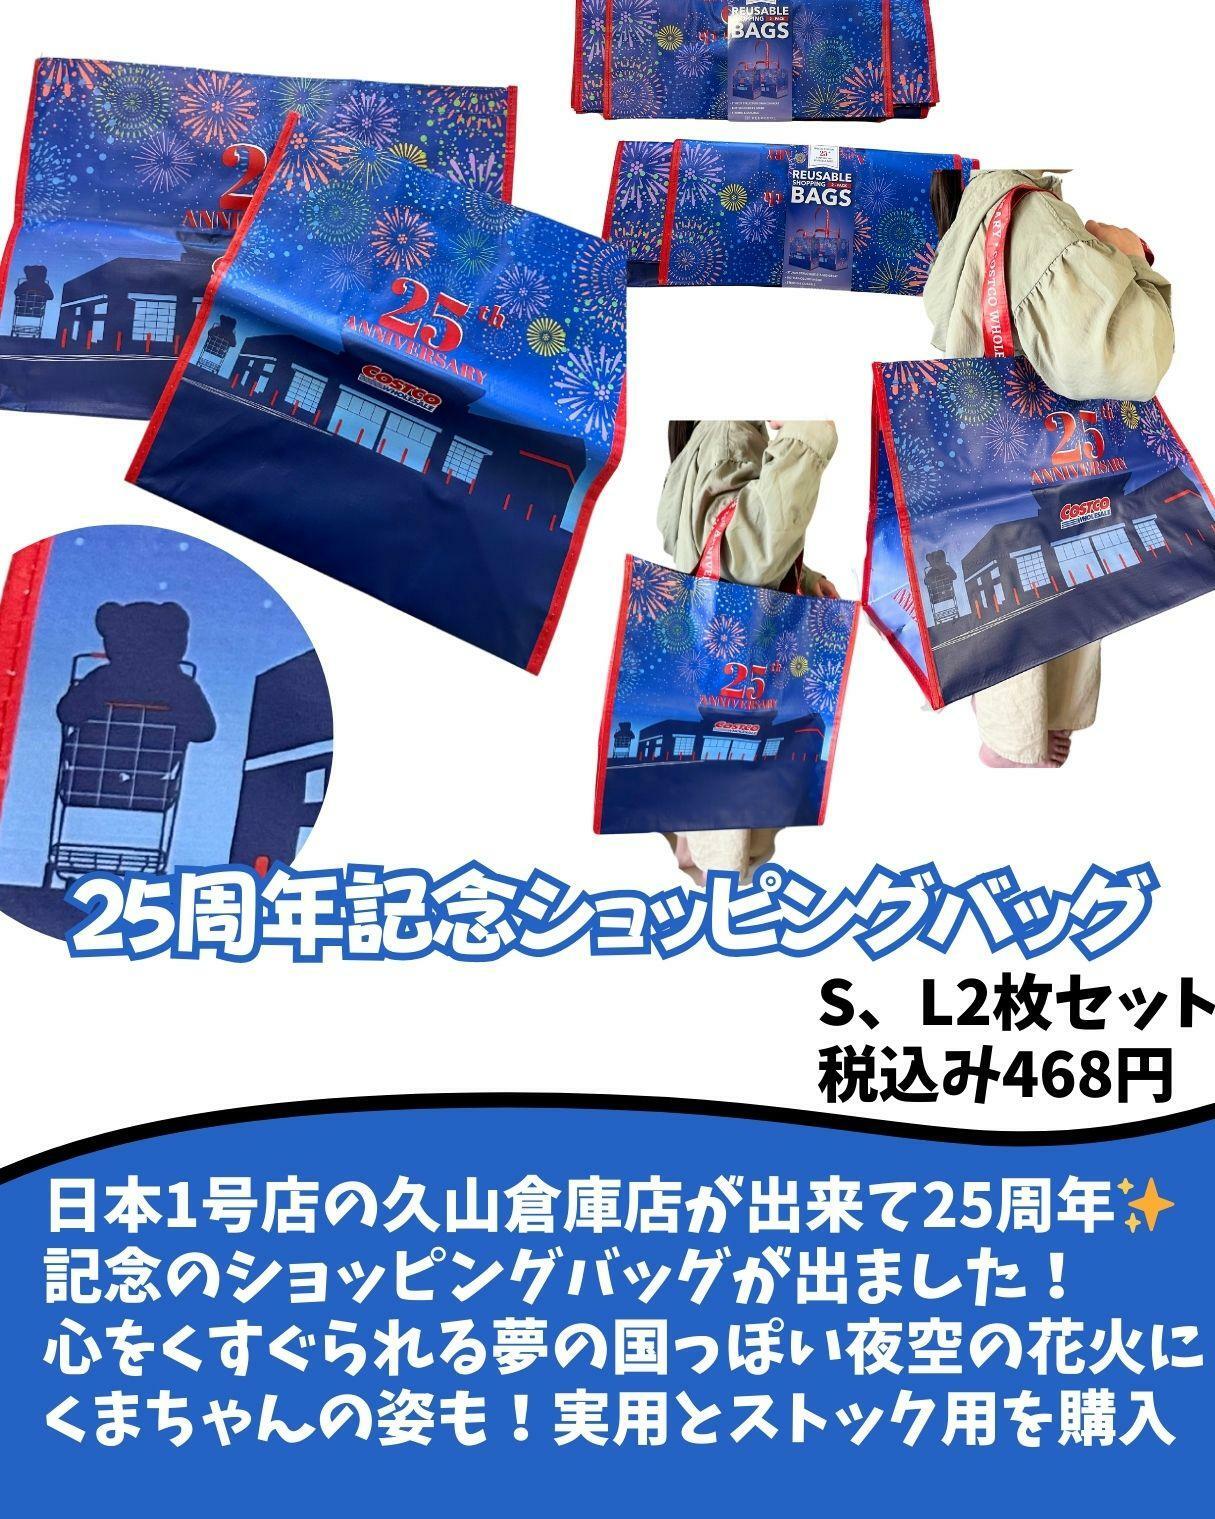 【コストコ】25周年記念ショッピングバッグ